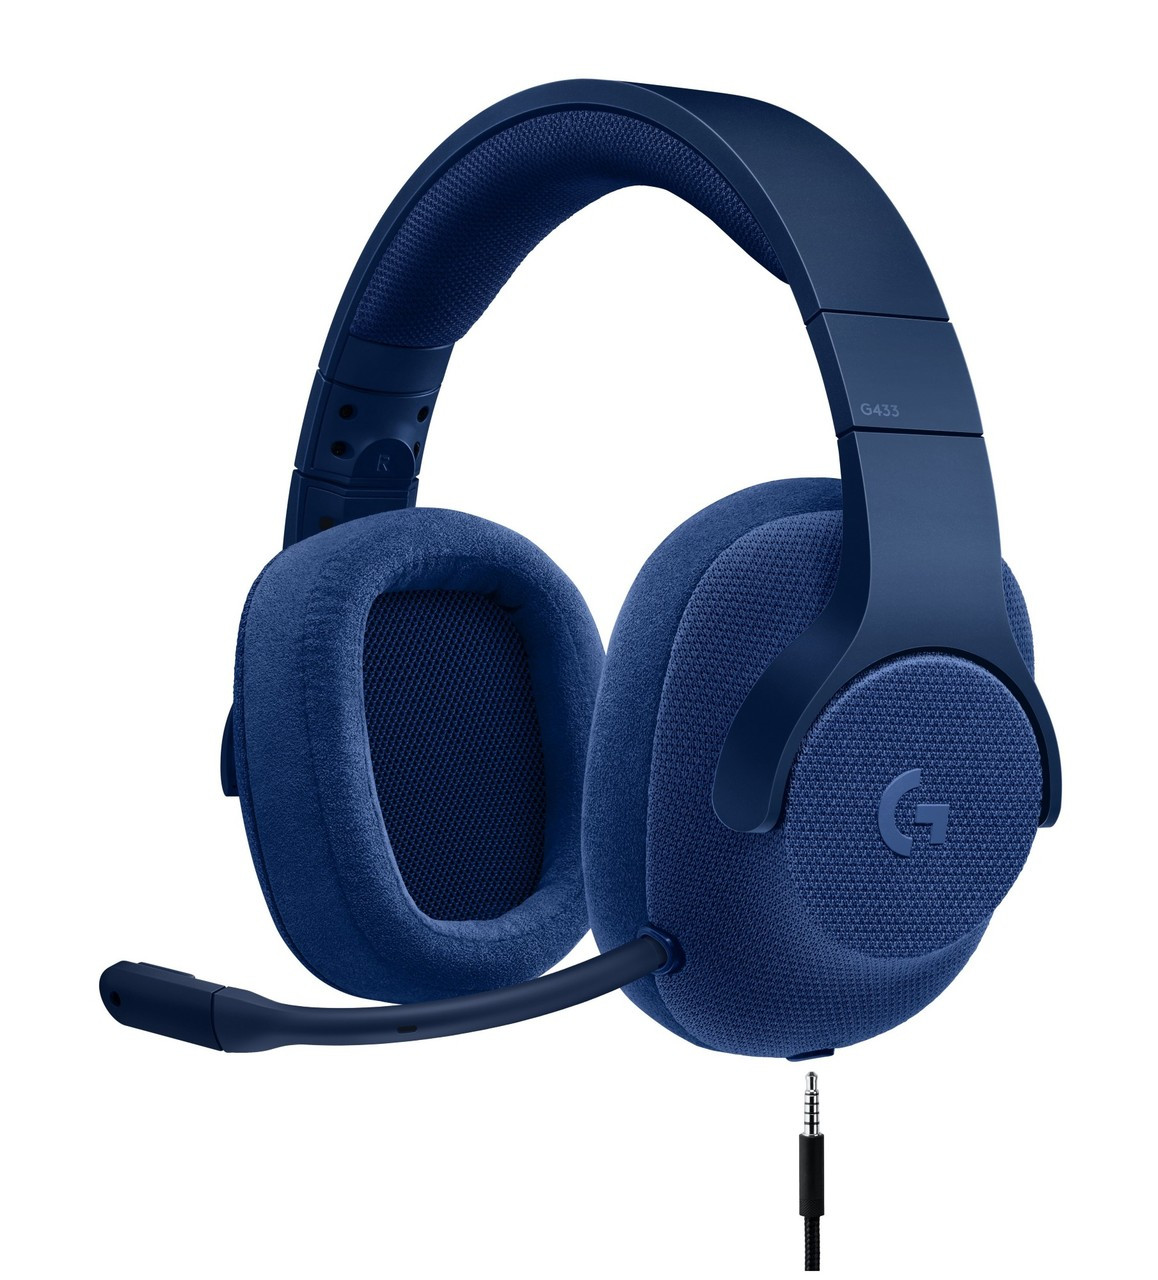 Logitech G433 mobile headset